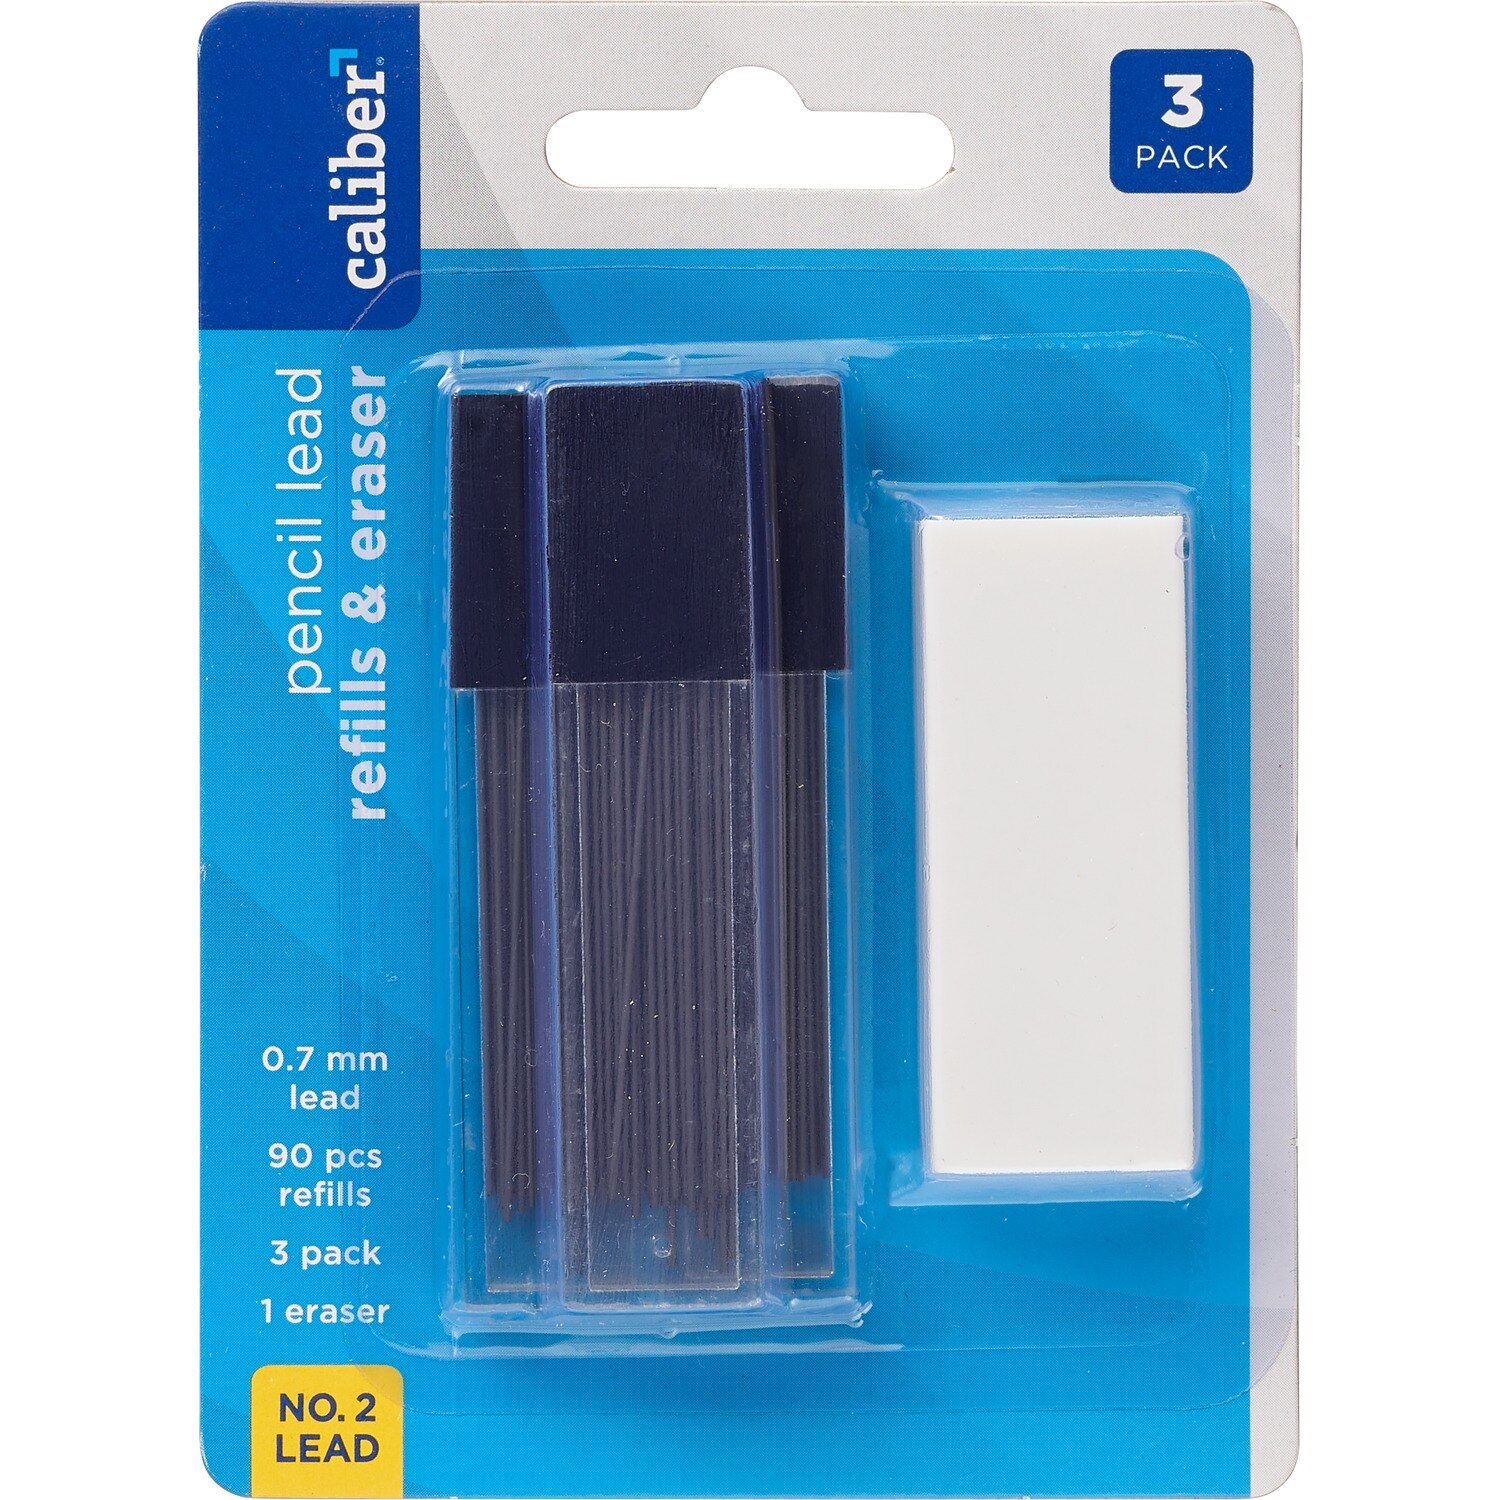 Caliber No. 2 Pencil Lead Refills & Eraser, 90 pcs